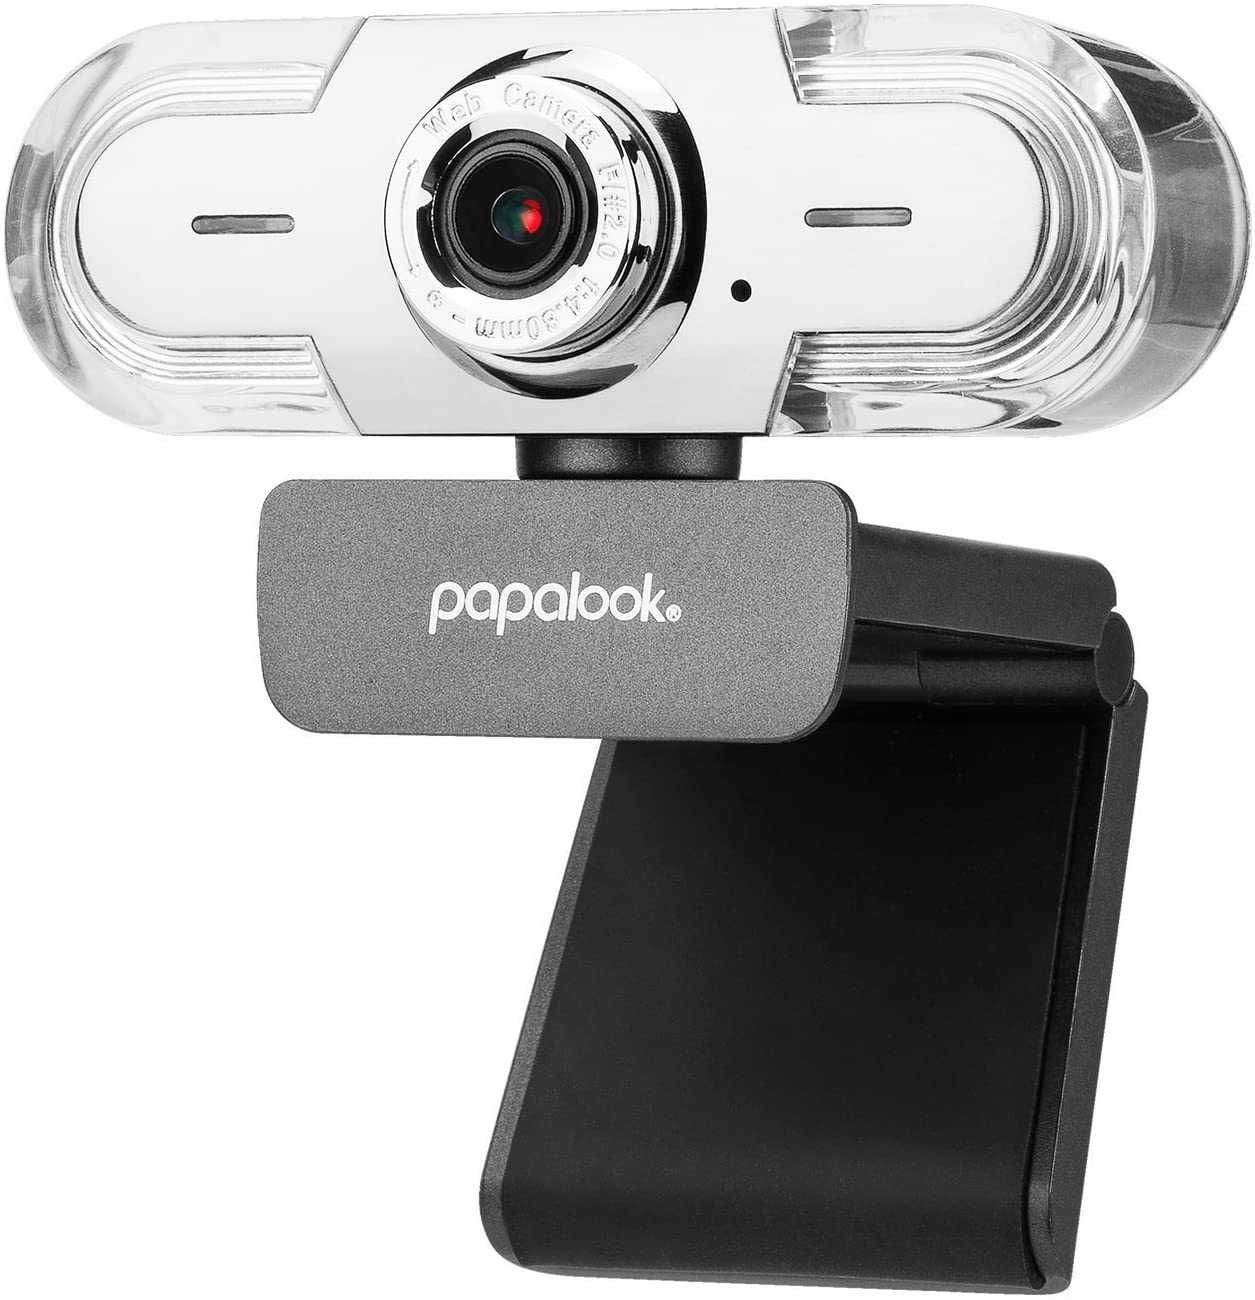 Papalook HD 1080P WebCamera PA452Pro